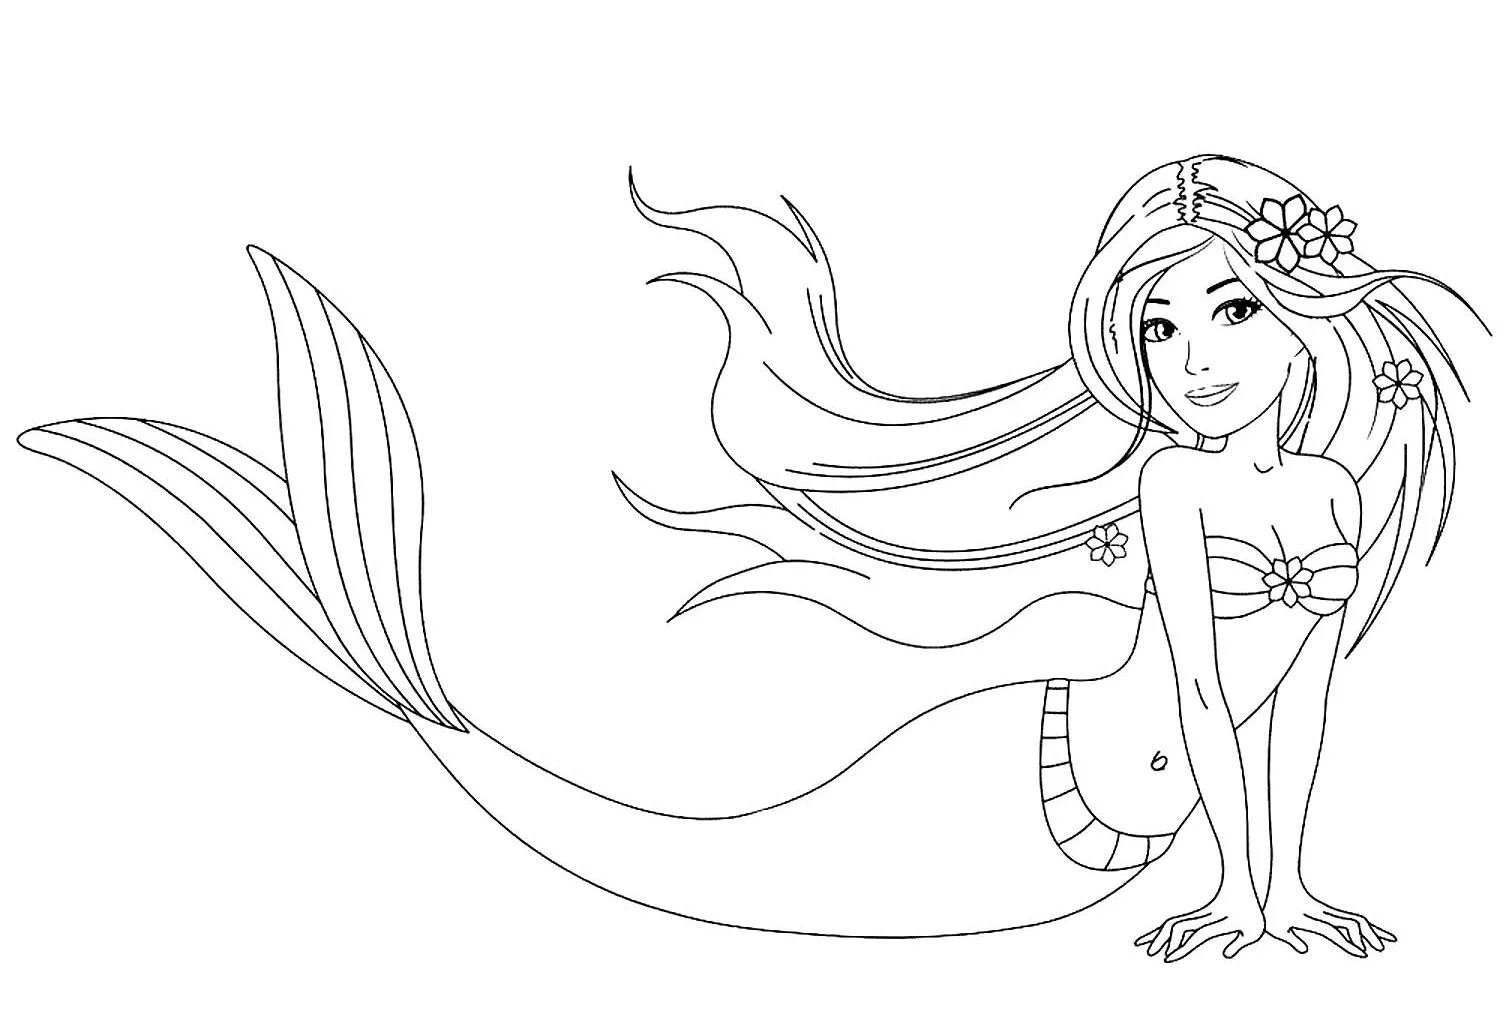 Mermaid pattern #8